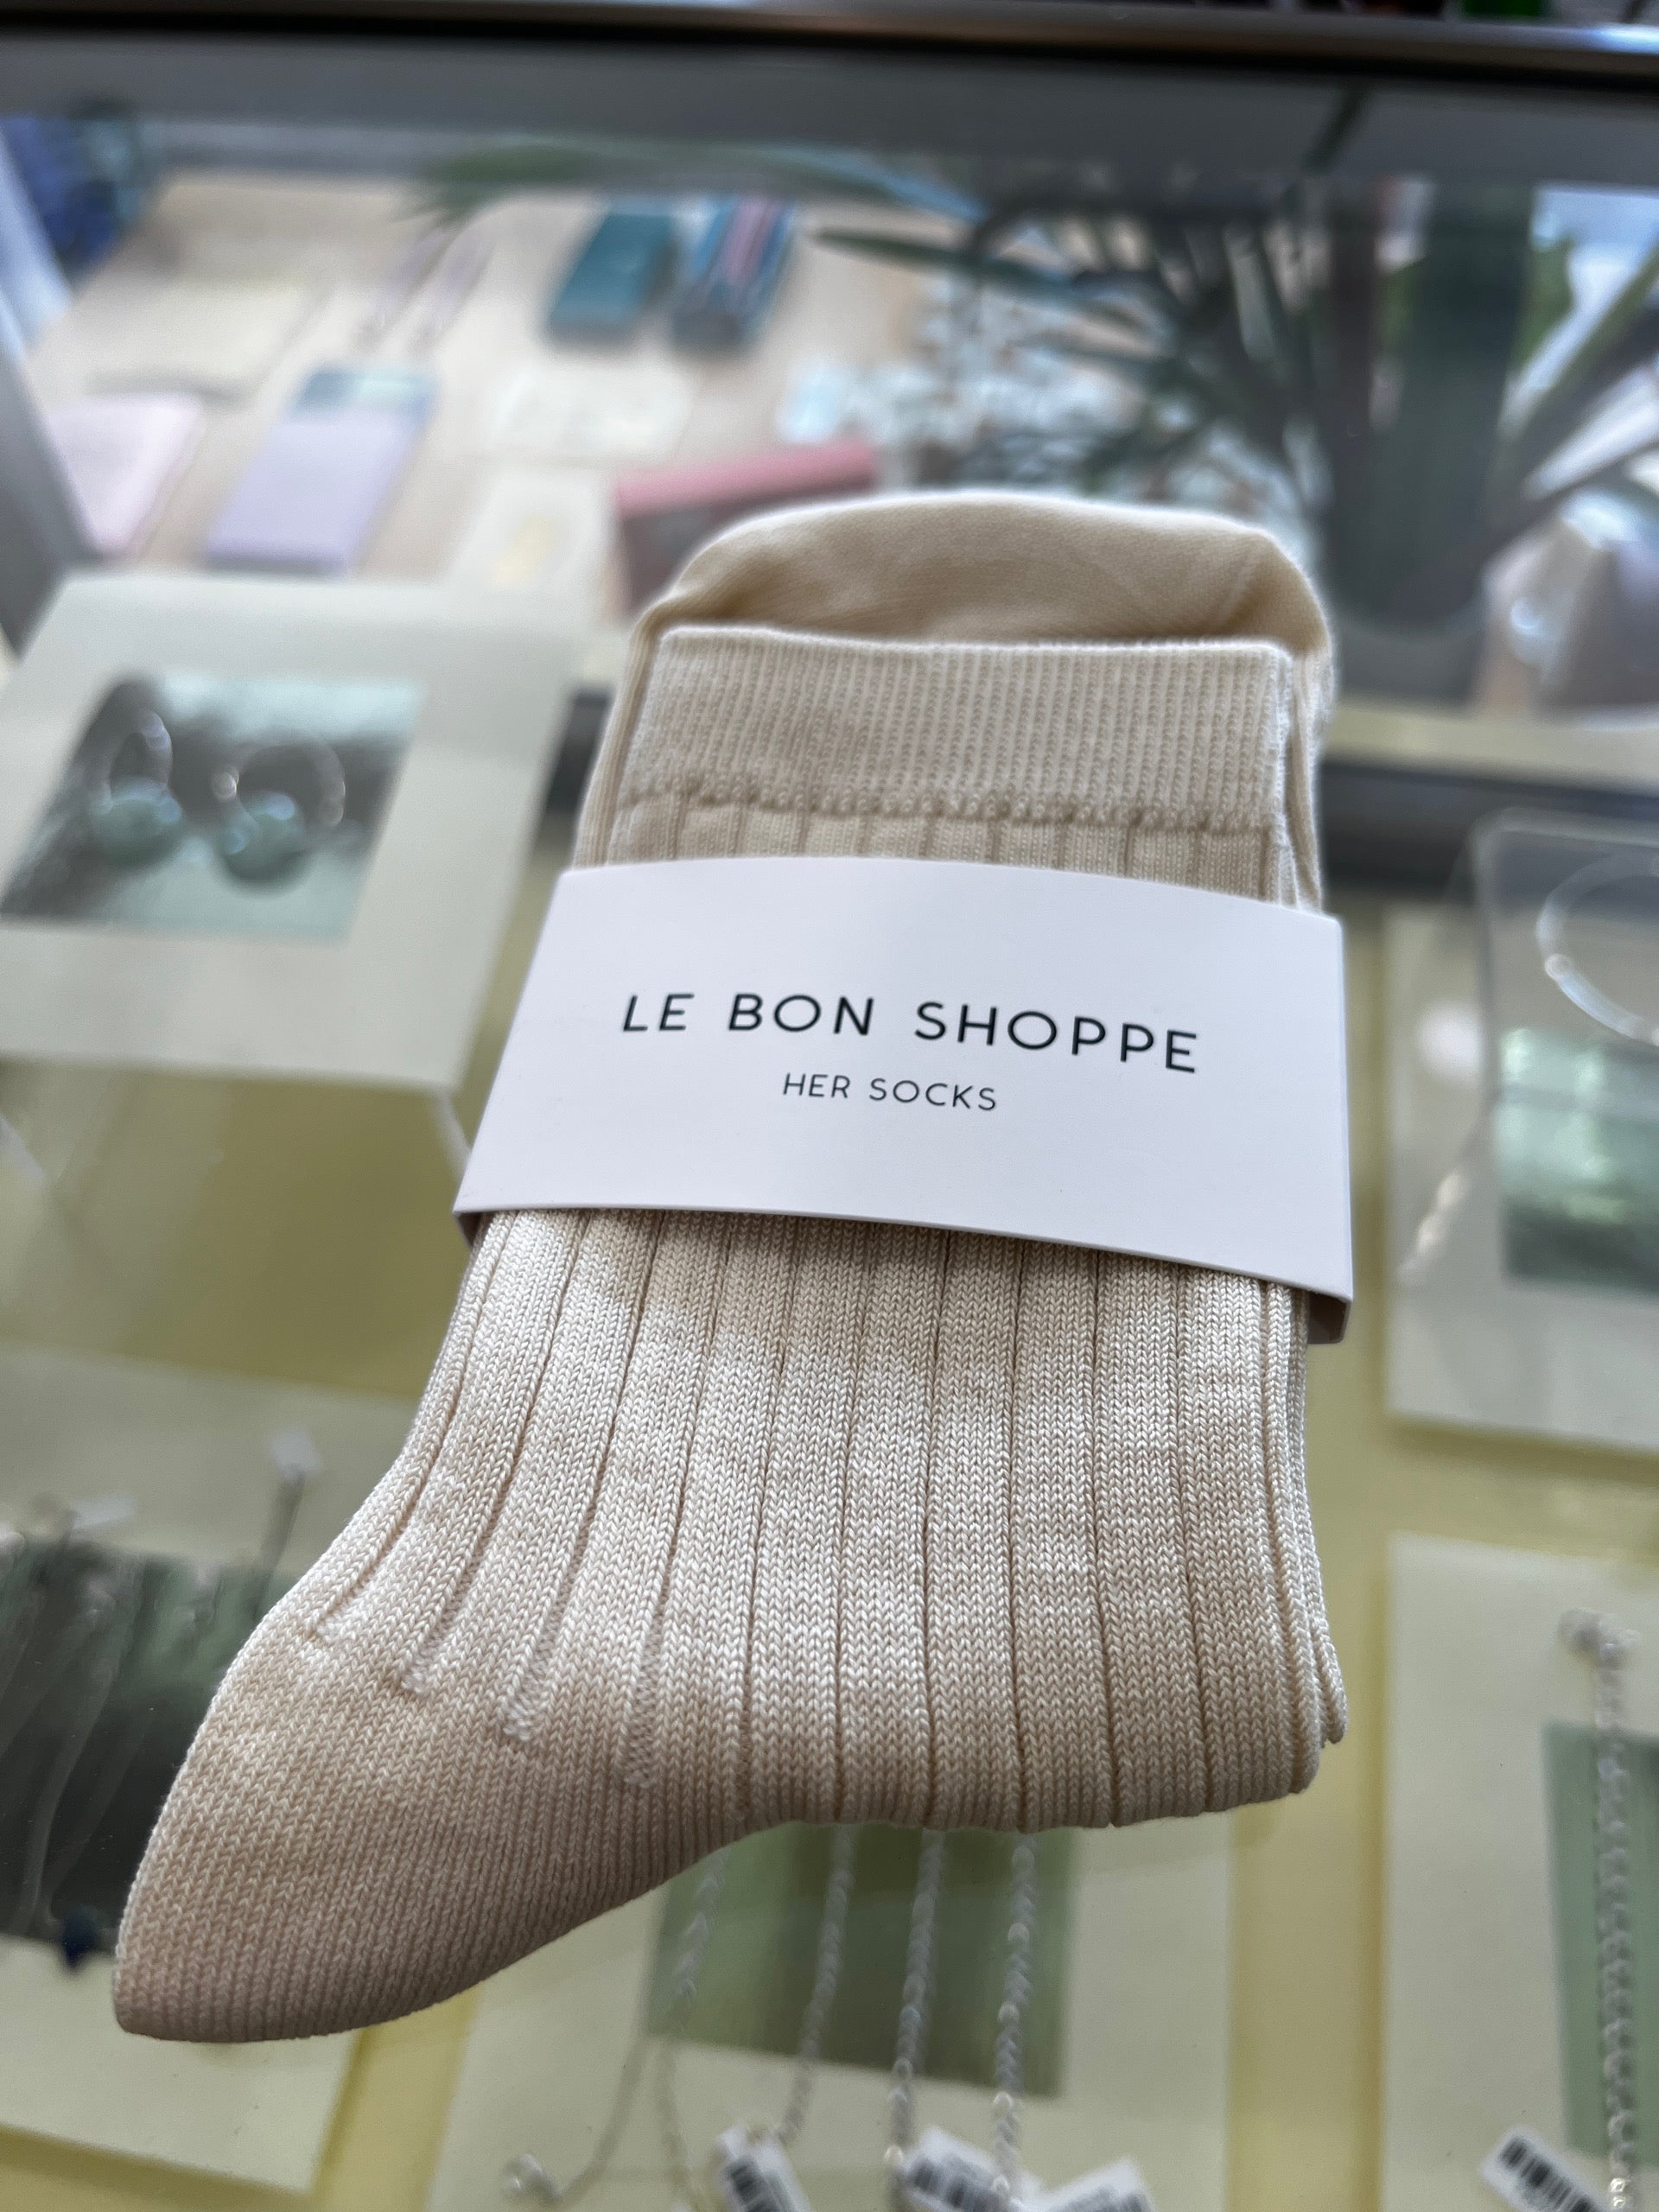 Le Bon Shoppe Her Socks